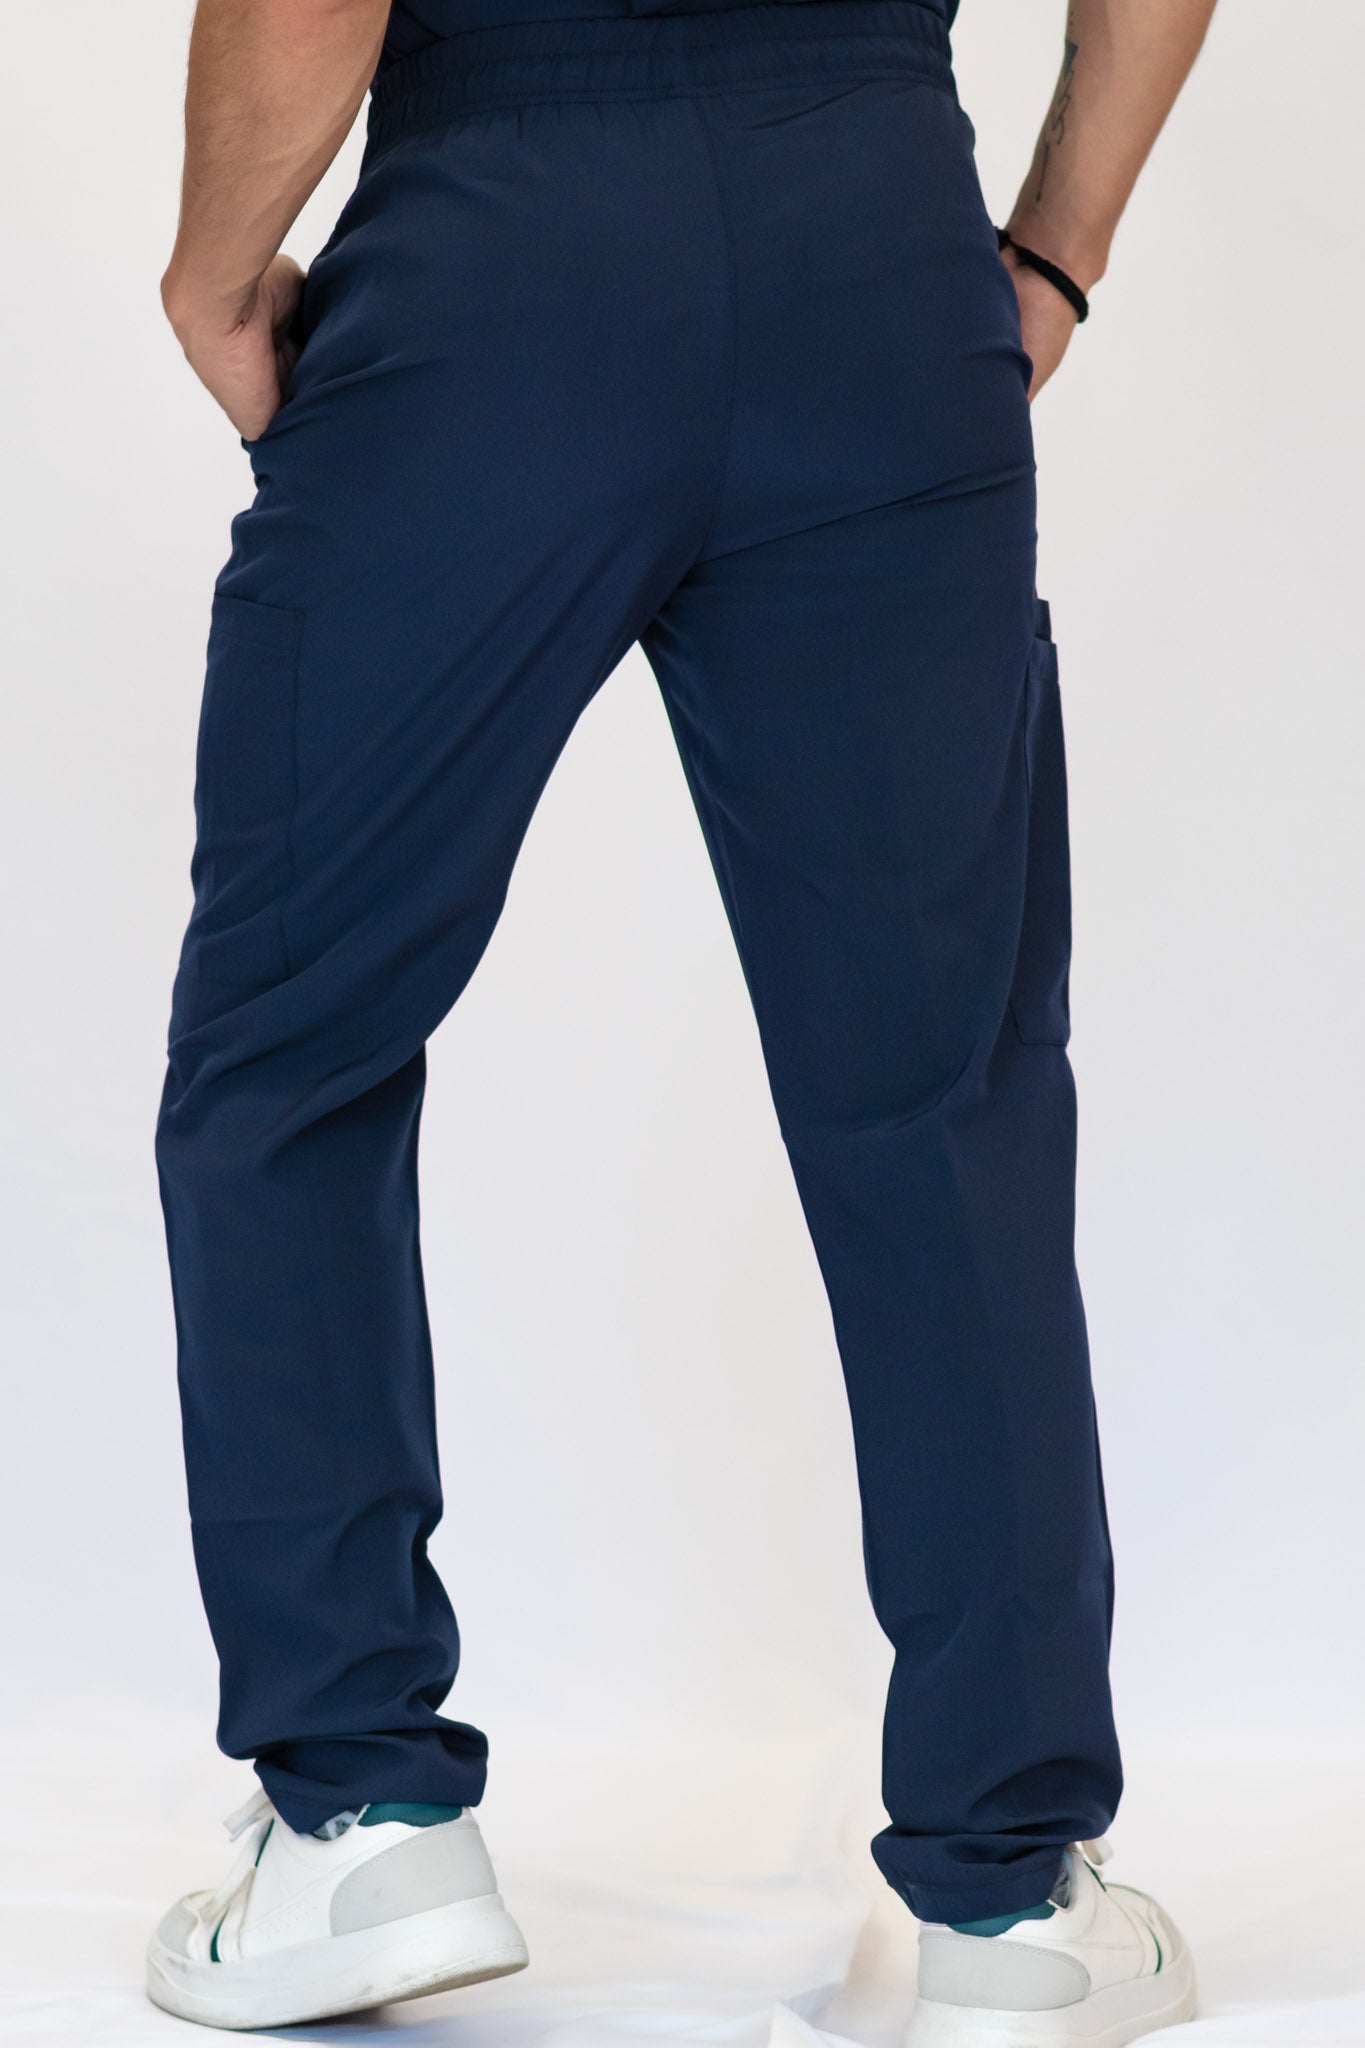 Pantalon Quirurgico Hombre 600 5 bolsas Azul Marino Antifluido FW